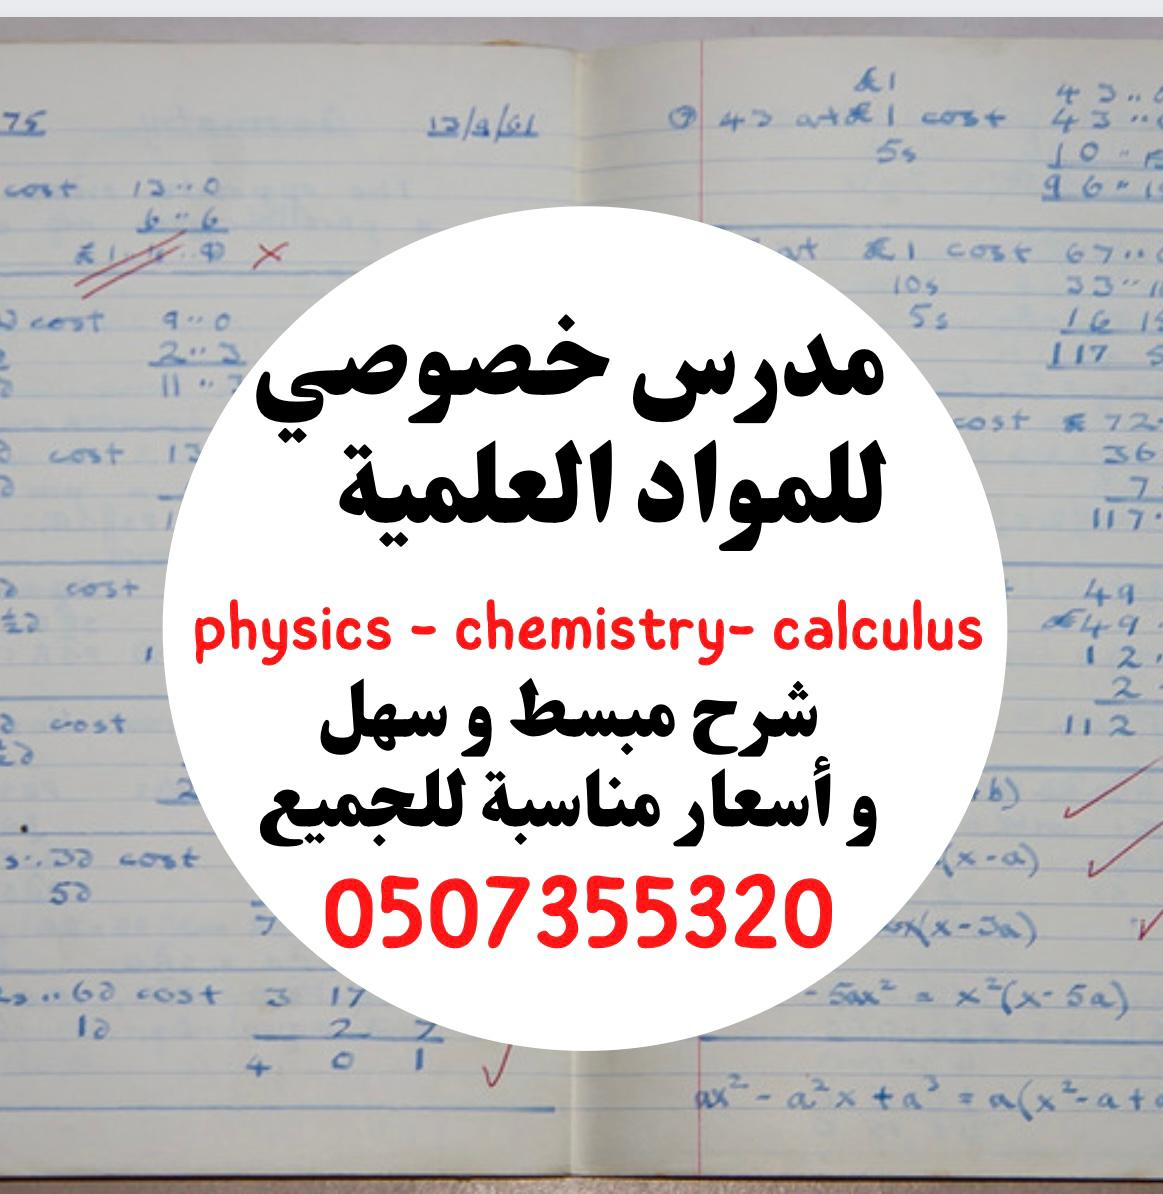 مدرس اردني خصوصي للمواد العلمية ( فزياء كيمياء رياضيات )